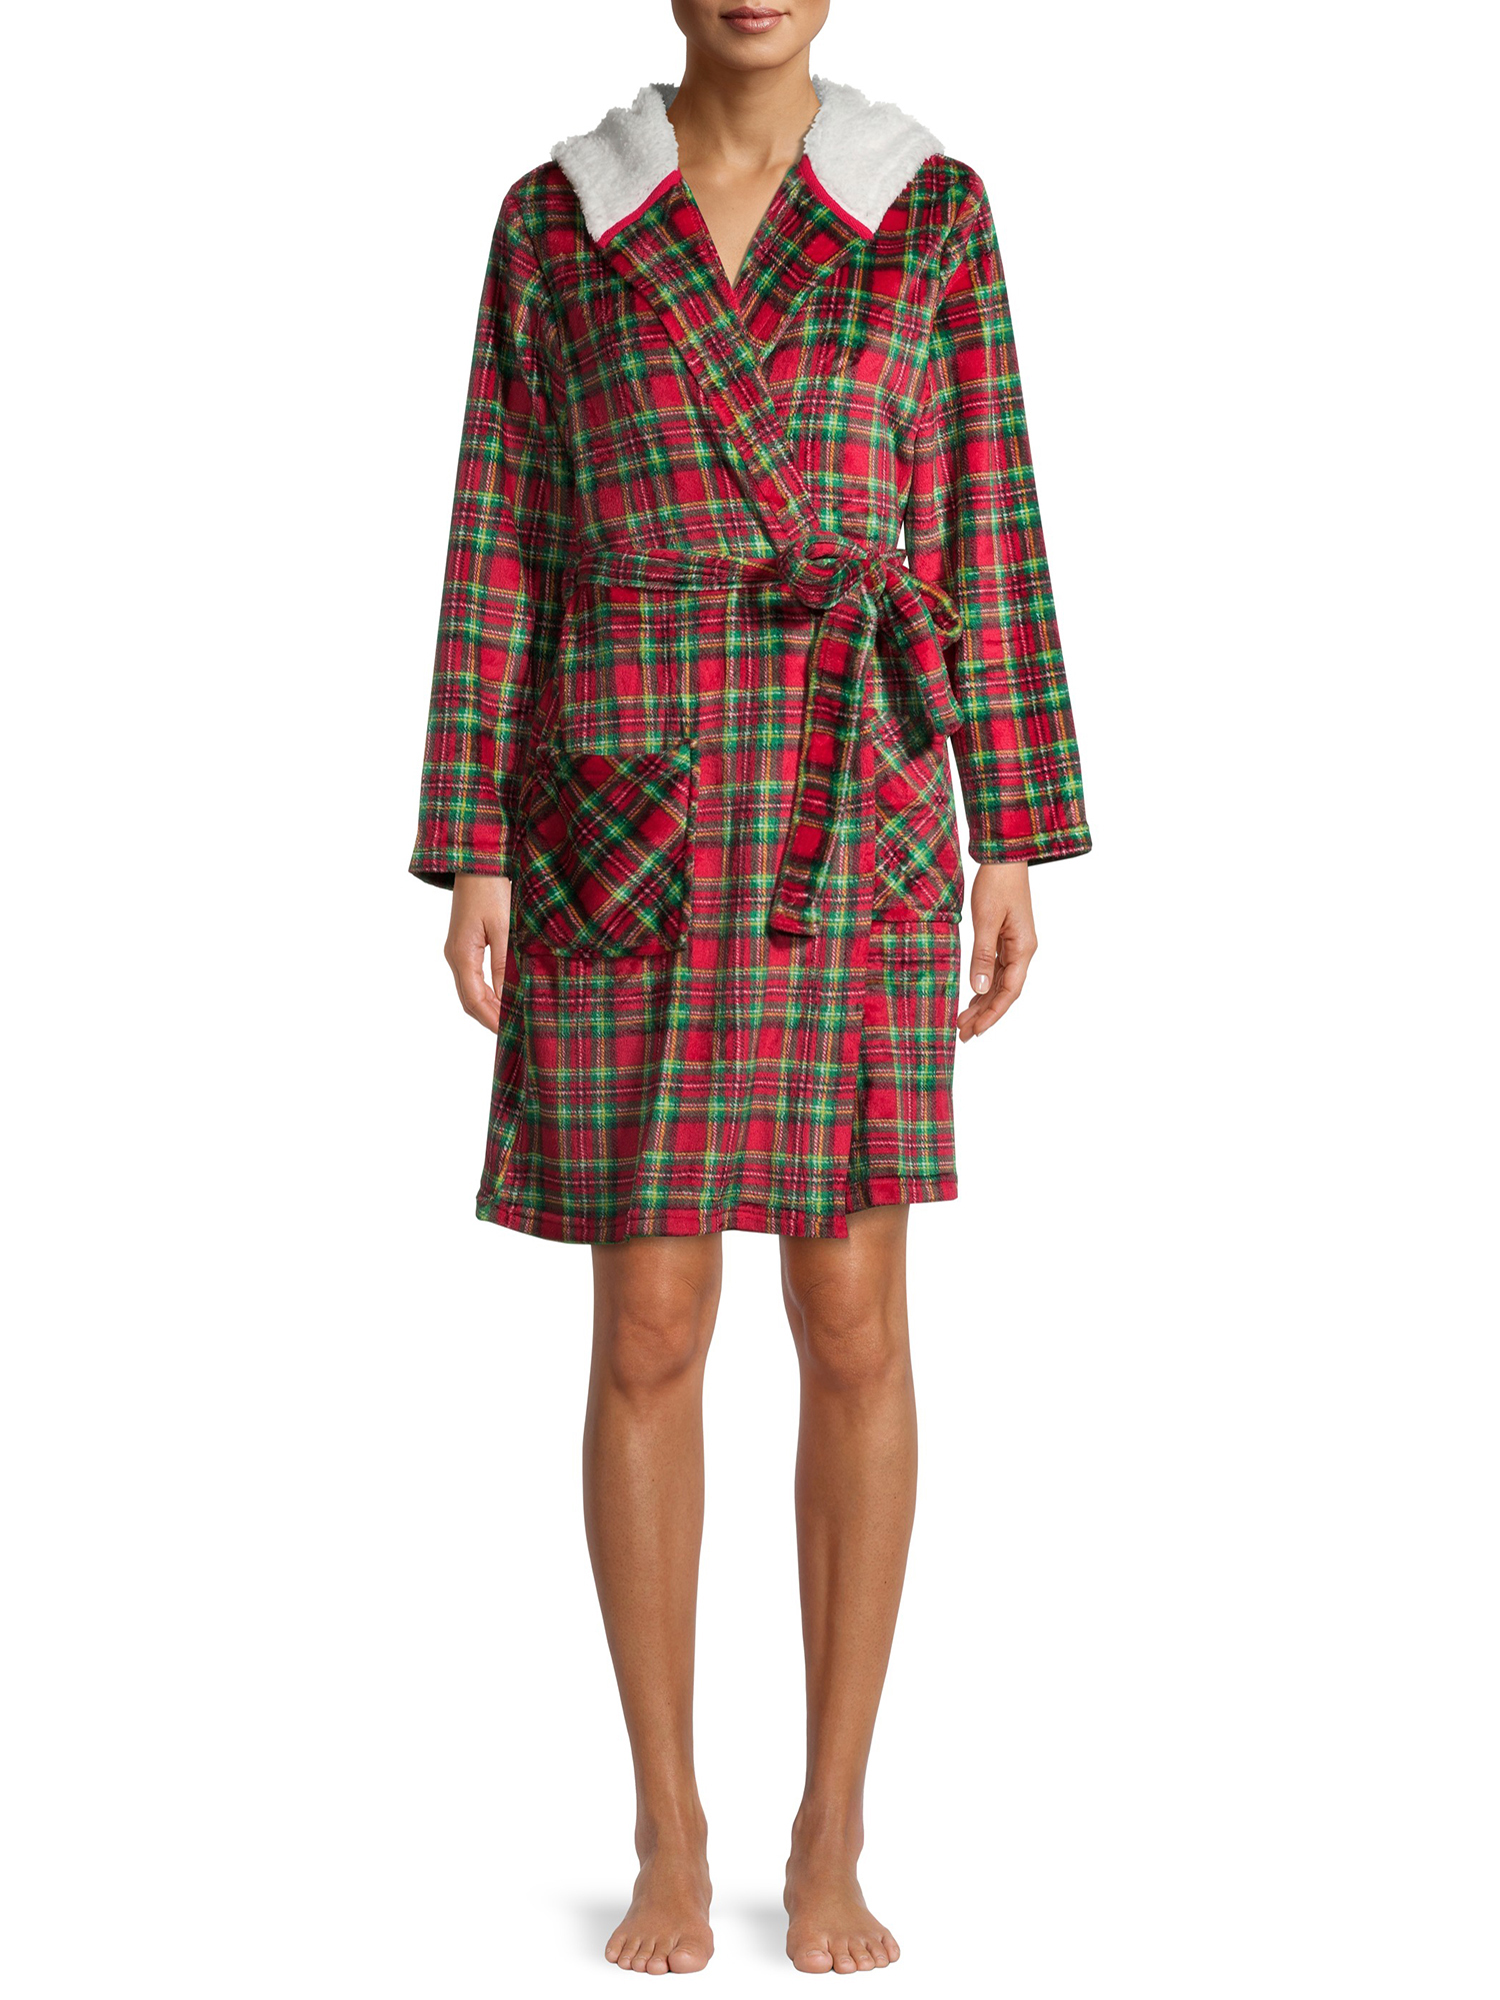 Derek Heart Women's Hooded Tartan Robe w/ Faux Sherpa Lining $10 + Free Shipping w/ Walmart+ or FS on $35+